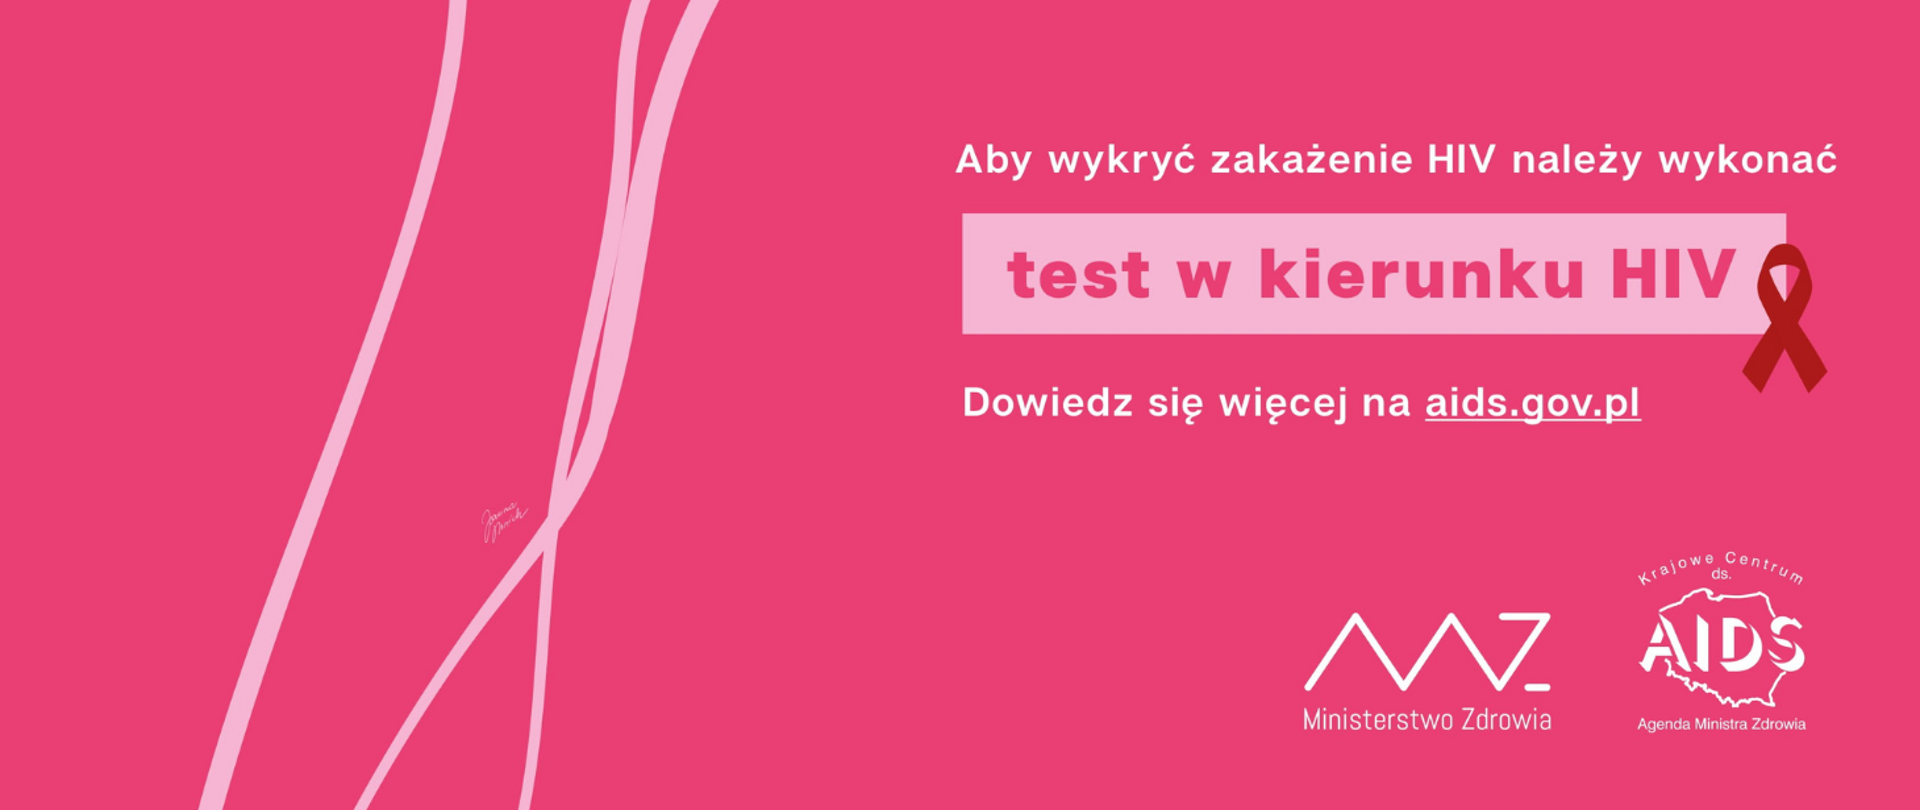 Grafika z tekstem: Aby wykryć zakażenie należy wykonać test w kierunku HIV. Dowiedz się więcej na aids.gov.pl. Logo Ministerstwa Zdrowia i Krajowego Centrum ds. AIDS. Symbol czerwonej wstążeczki.